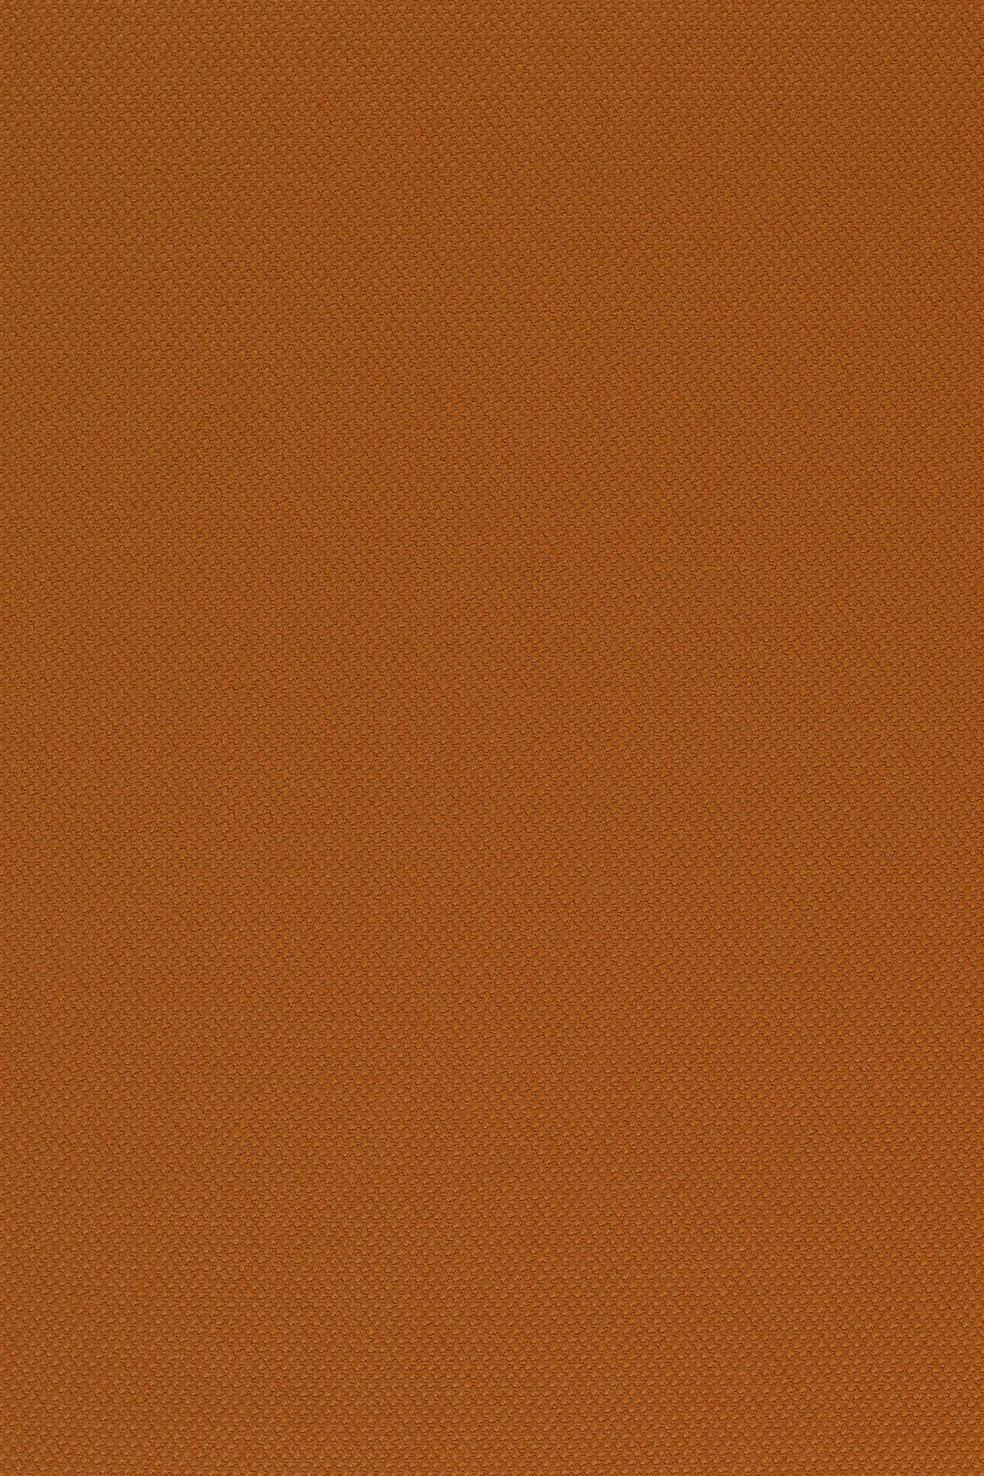 Fabric sample Steelcut 2 535 brown